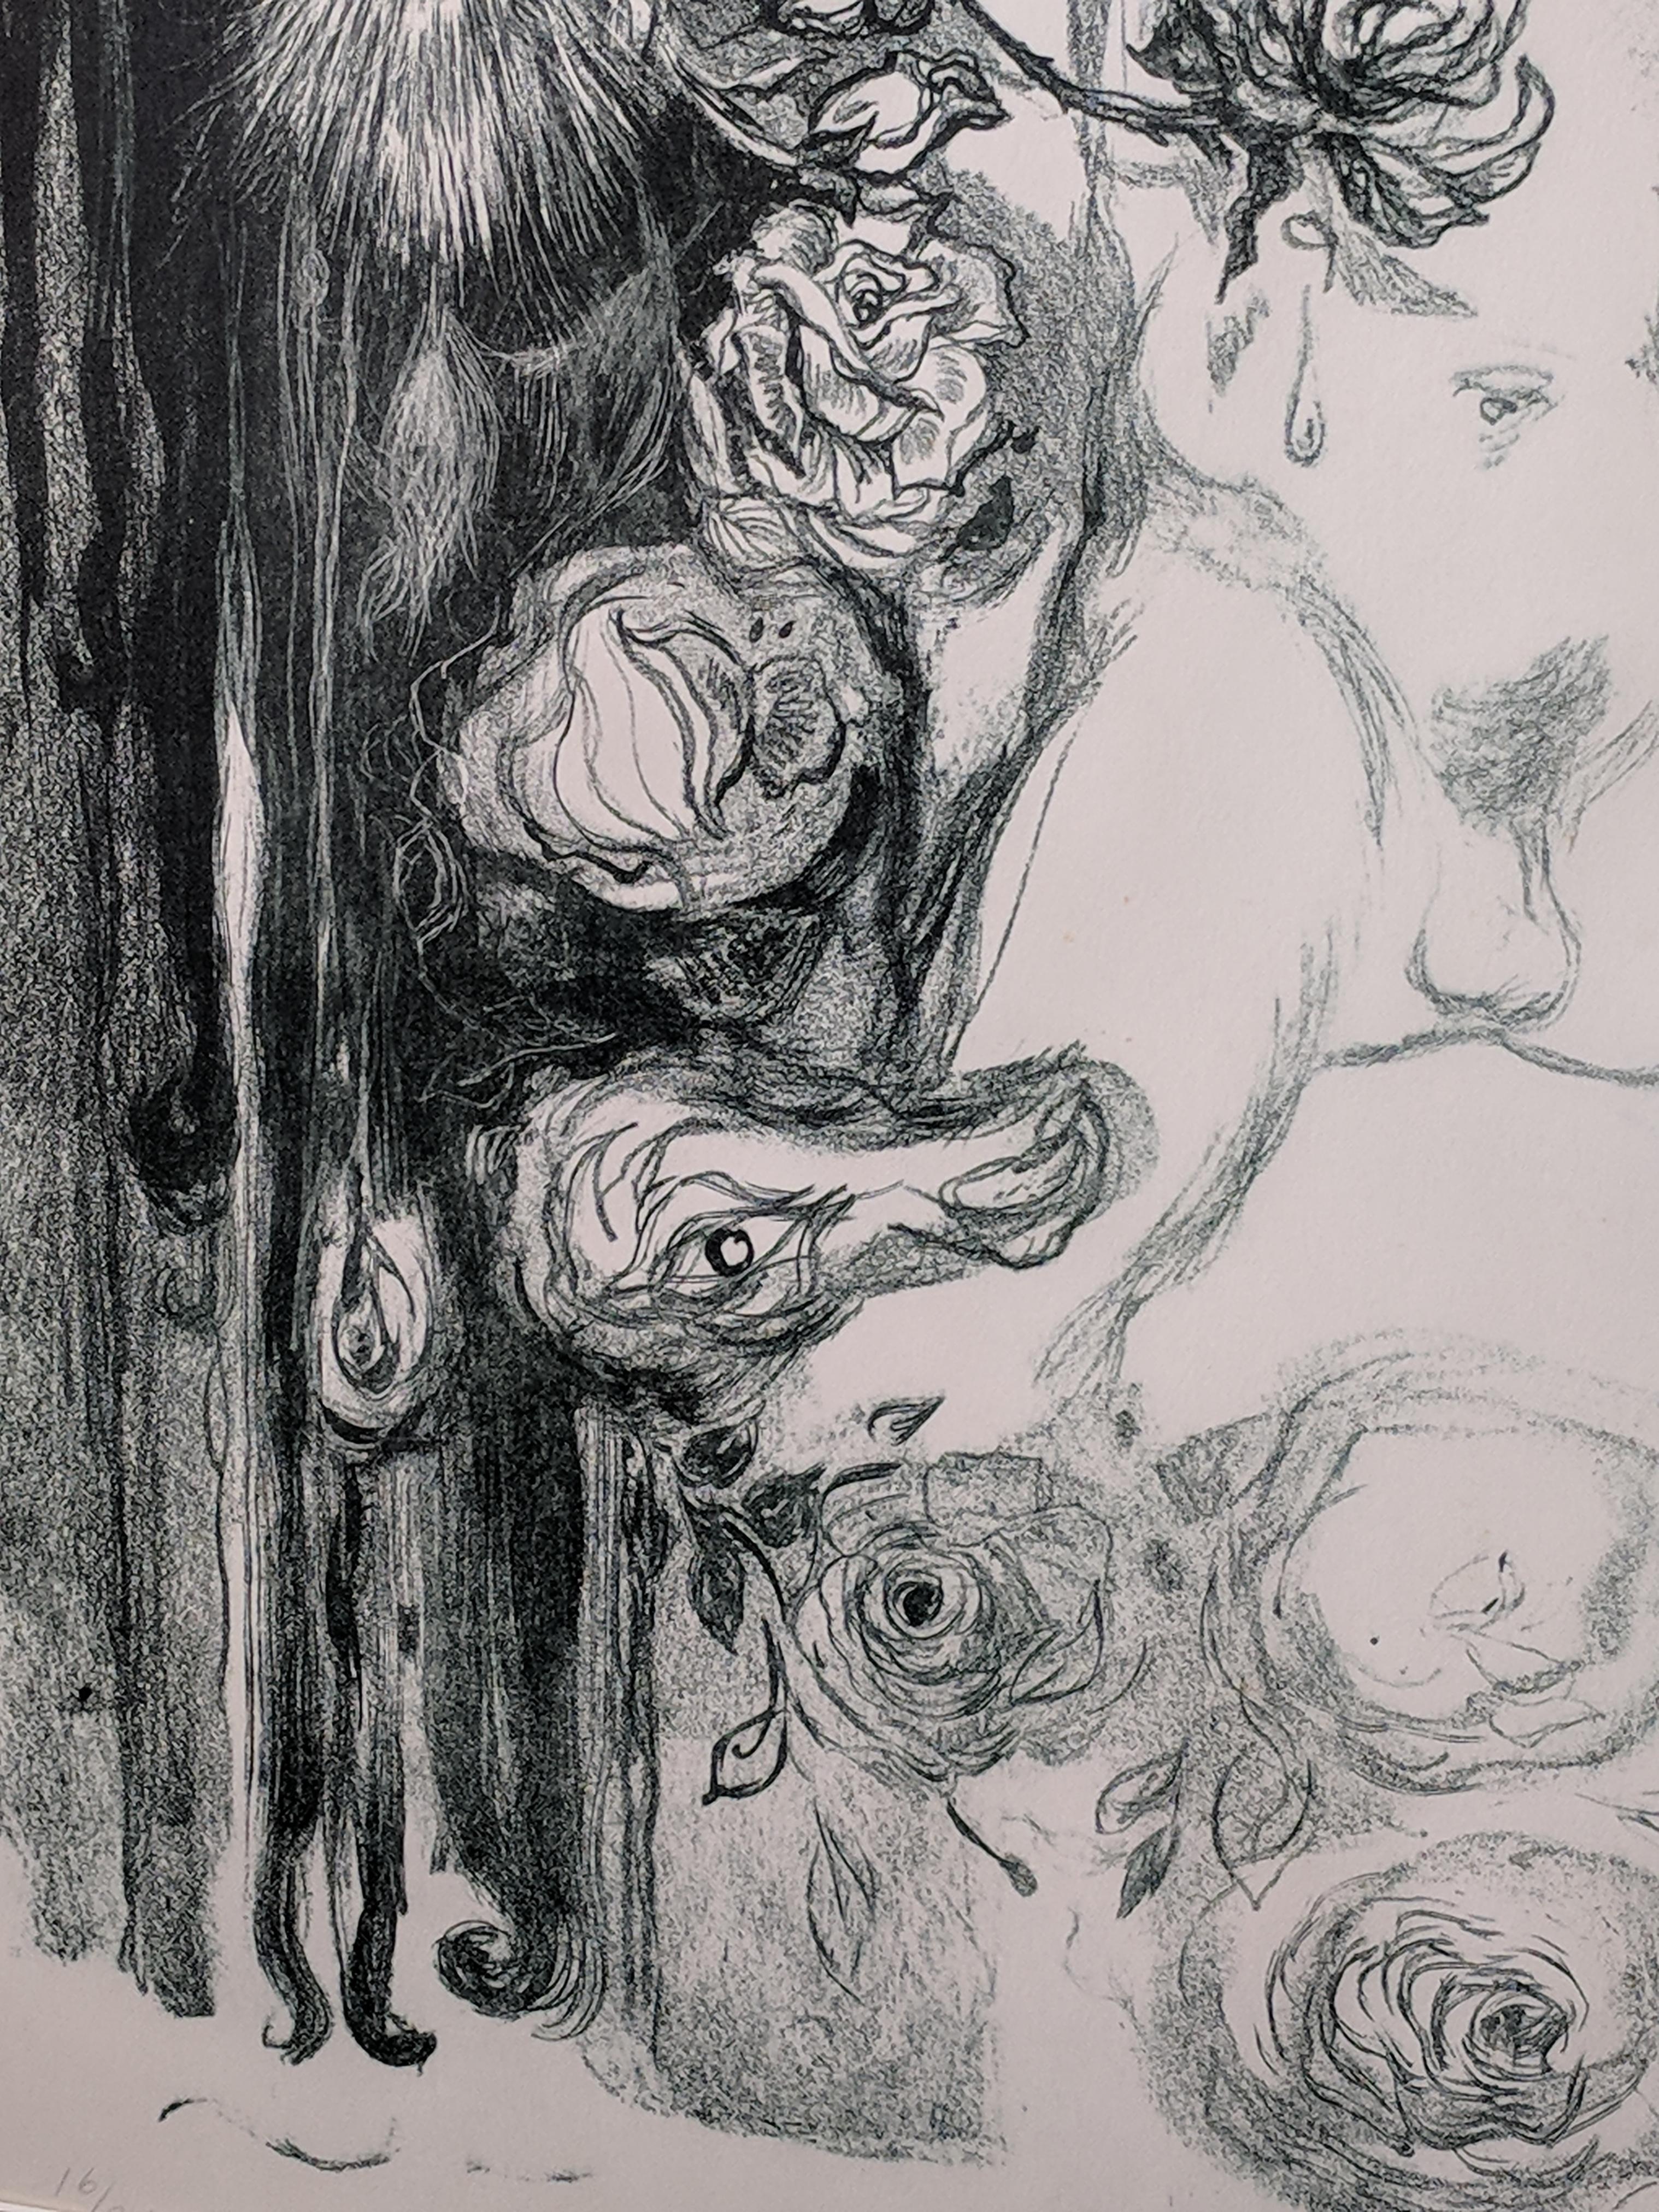 Diese dramatische Lithographie in limitierter Auflage von 16/24 Stück zeigt ein erotisches Bild eines Mannes mit Hoden und ohne Penis. Es ist in weiß und verdi gris und auf schwerem Papier gedruckt: C.M.Fabriano - 100/100 COTONE. Das Porträt dieses